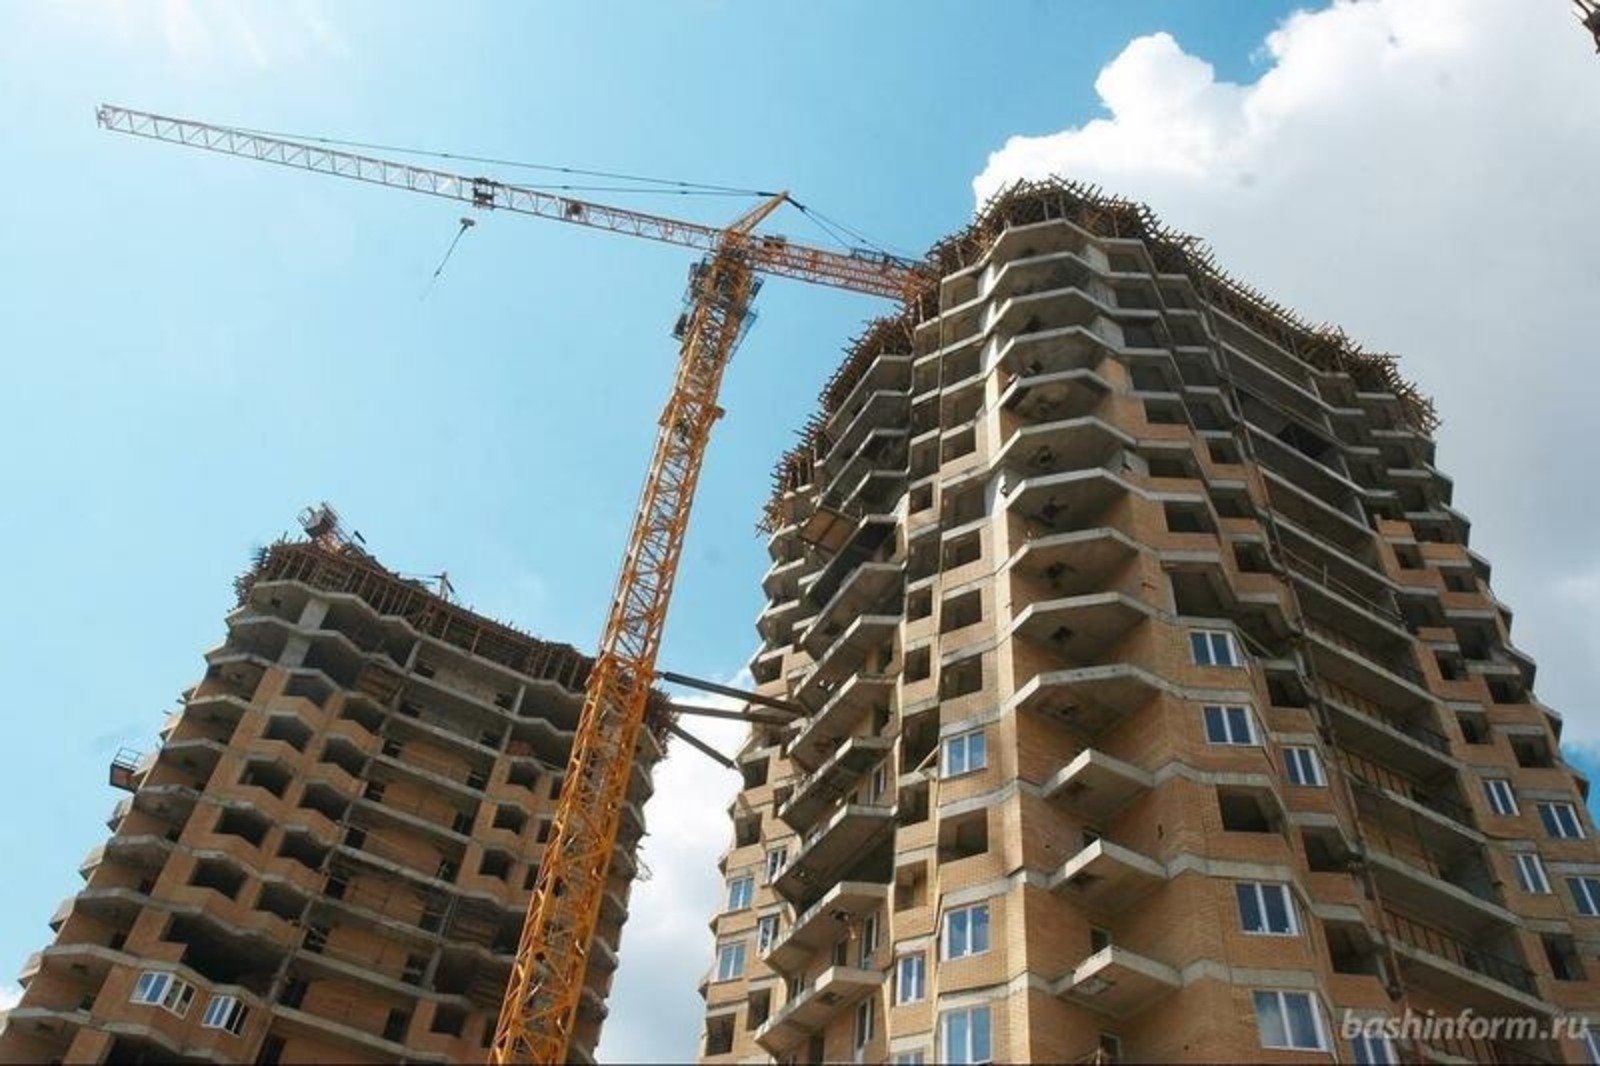 В Башкирии решили поднять стоимость квадратного метра жилья